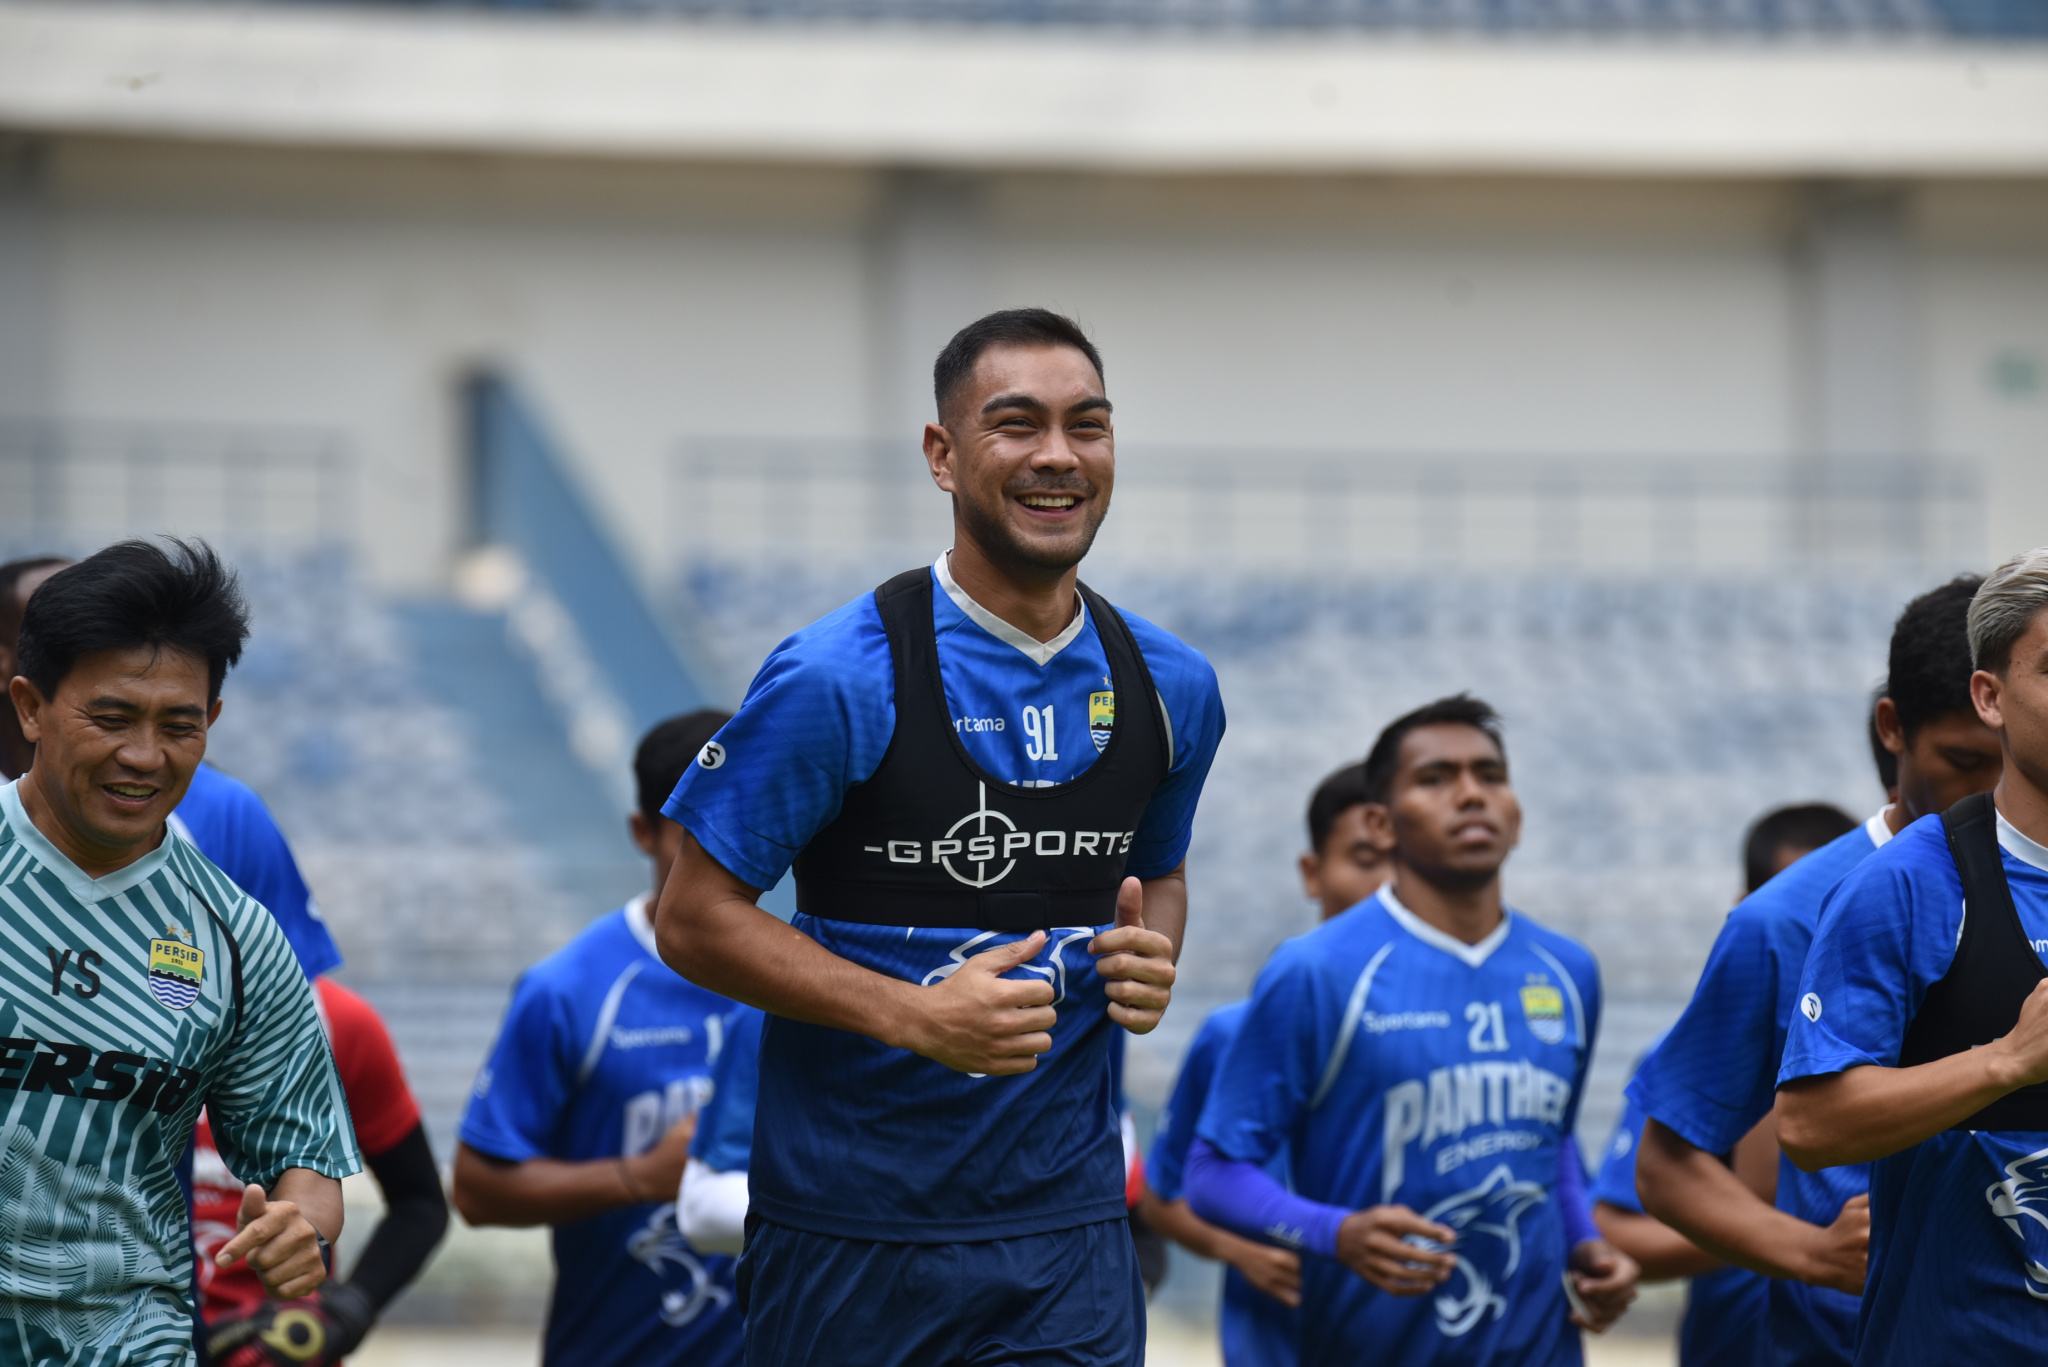 Omid Nazari Bidik Target Ambisius Bersama Persib Bandung di Liga 1 2020